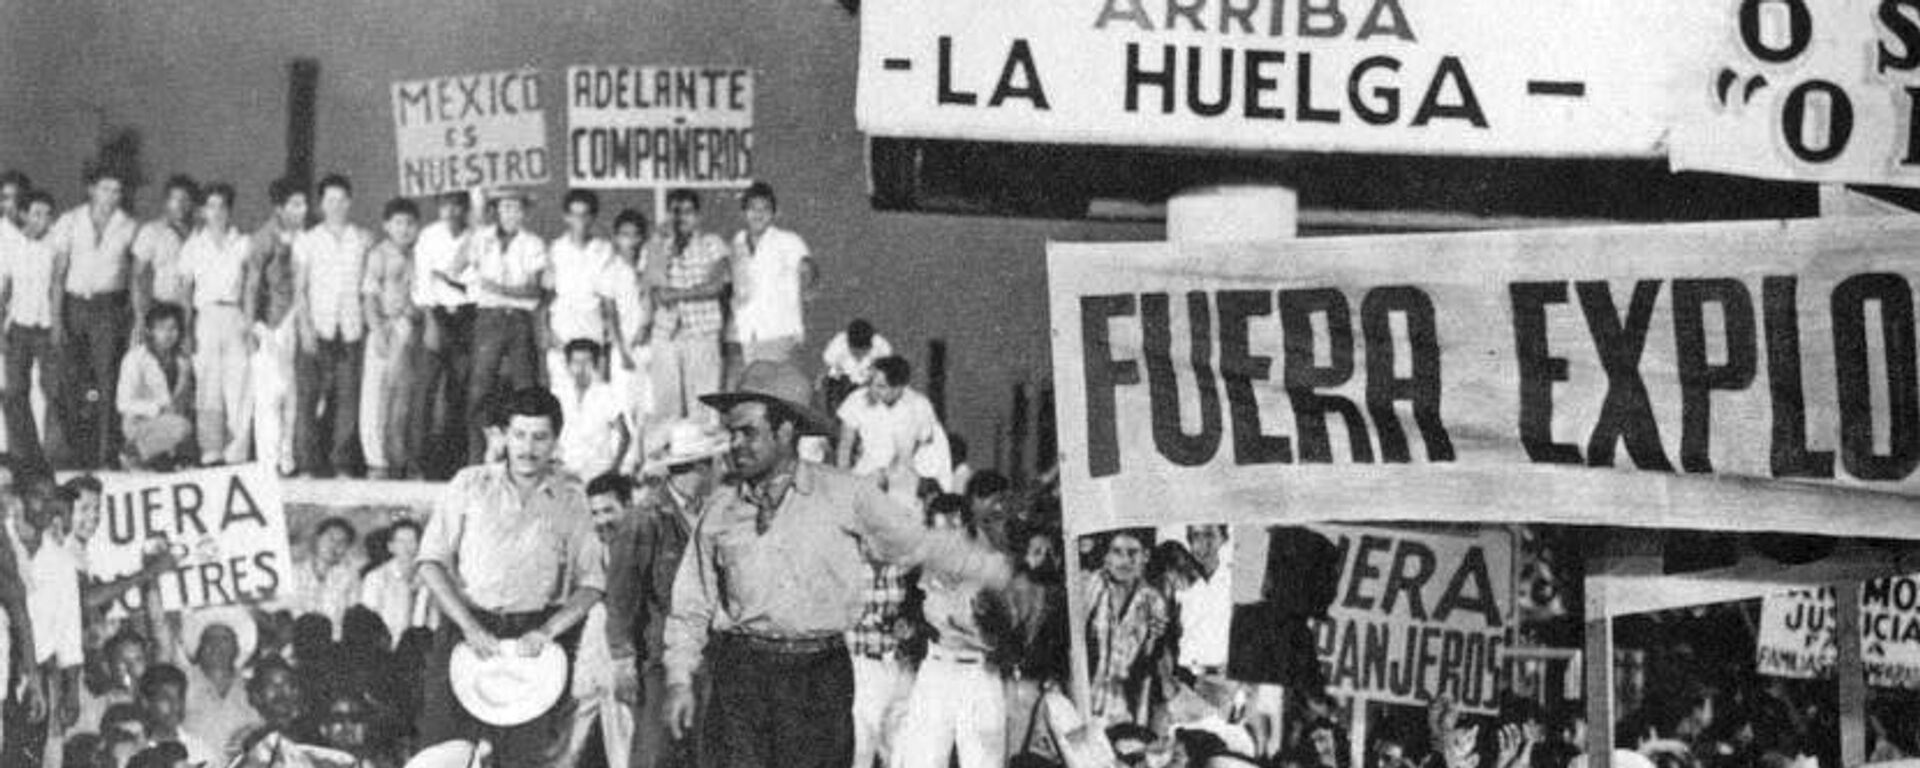 Rosa Blanca exhibe una protesta en contra de la explotación petrolera en México en la década de 1930.  - Sputnik Mundo, 1920, 20.12.2021